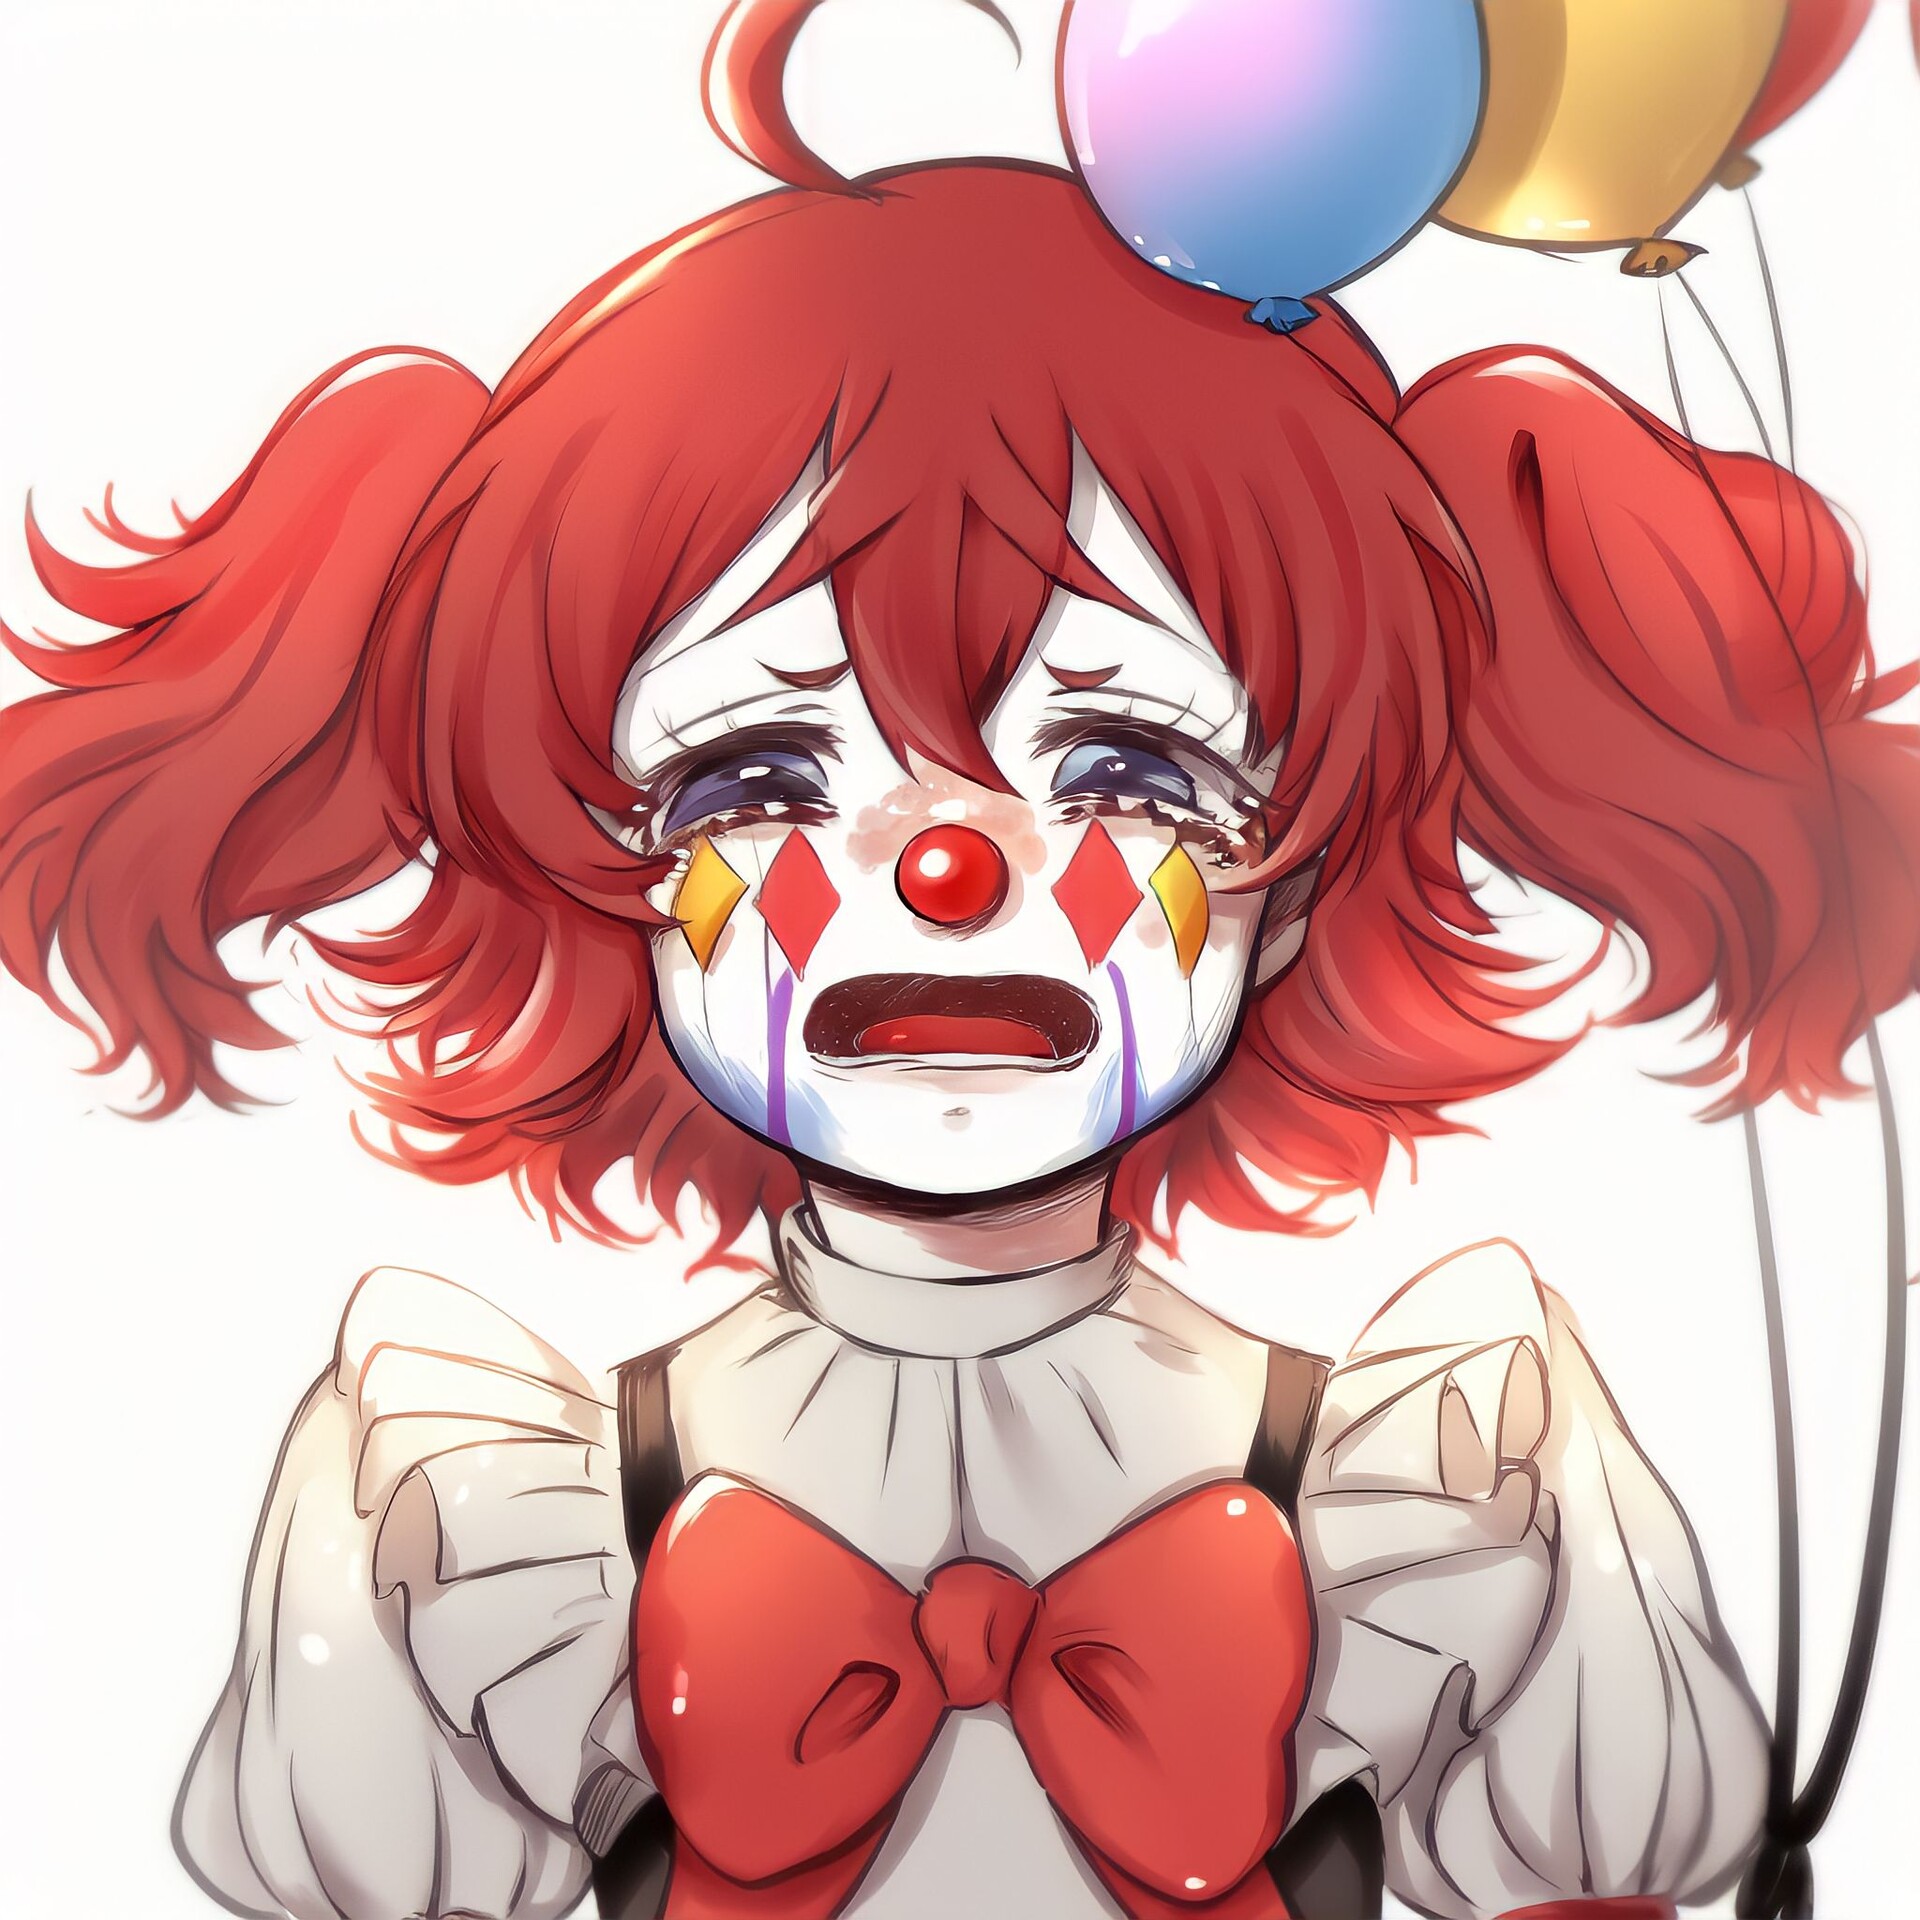 Anime clown boy by ihlsZet on DeviantArt